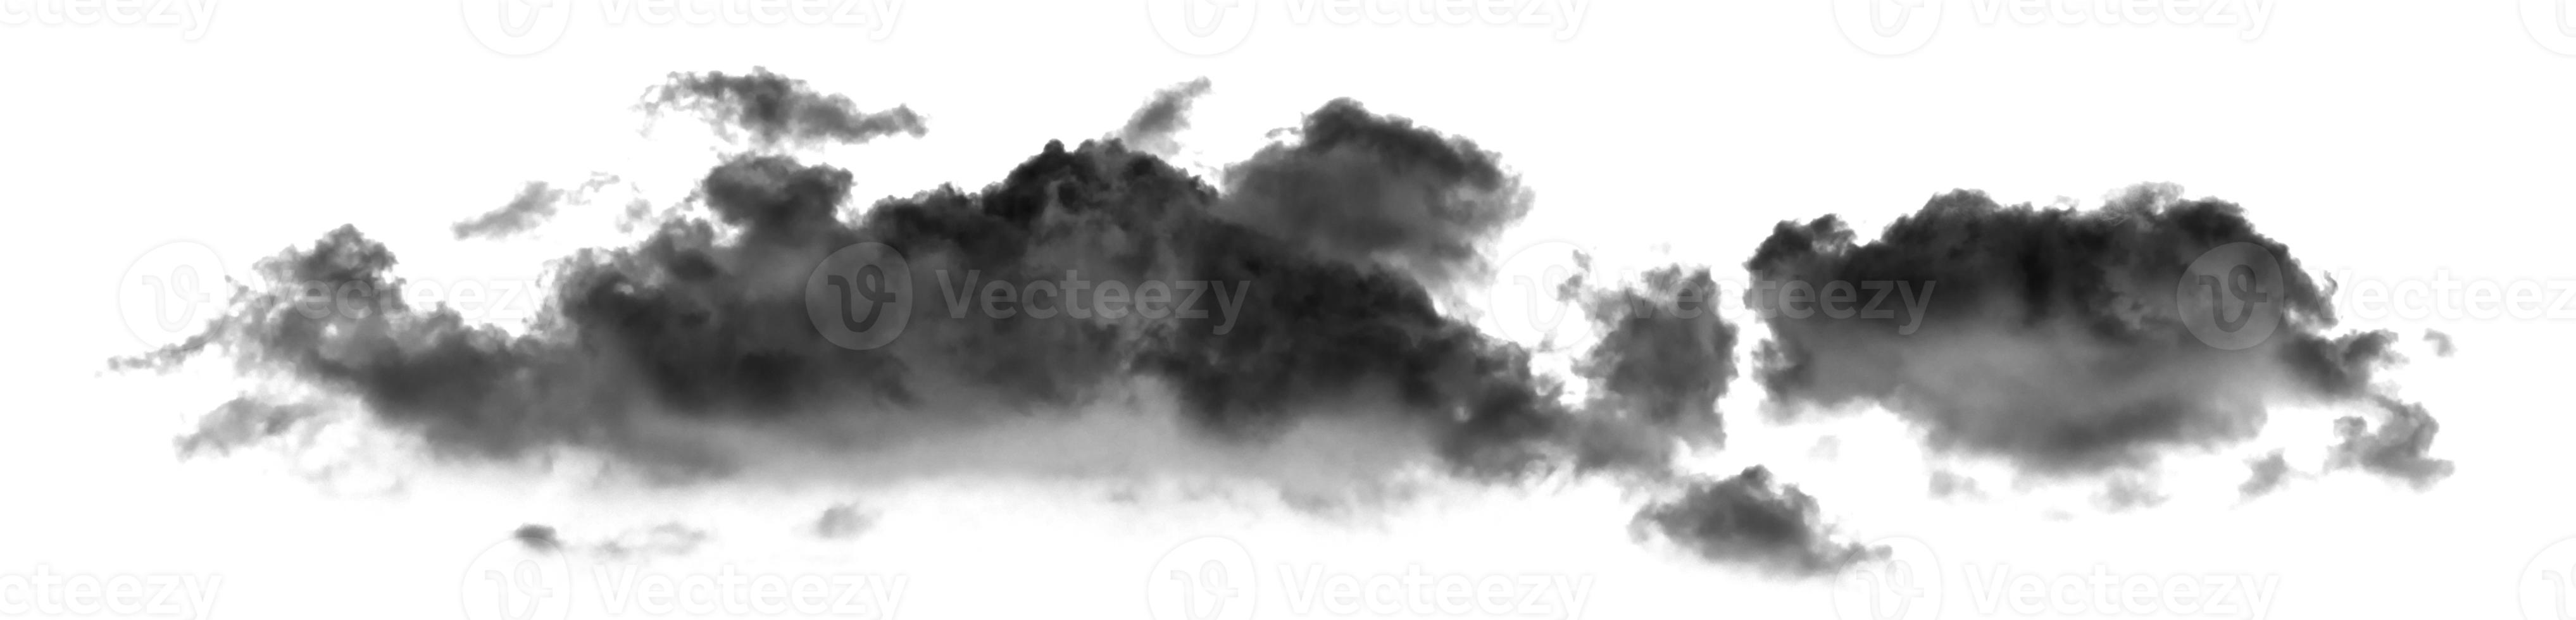 nube blanca aislada sobre fondo blanco, textura de humo, efecto de pincel foto